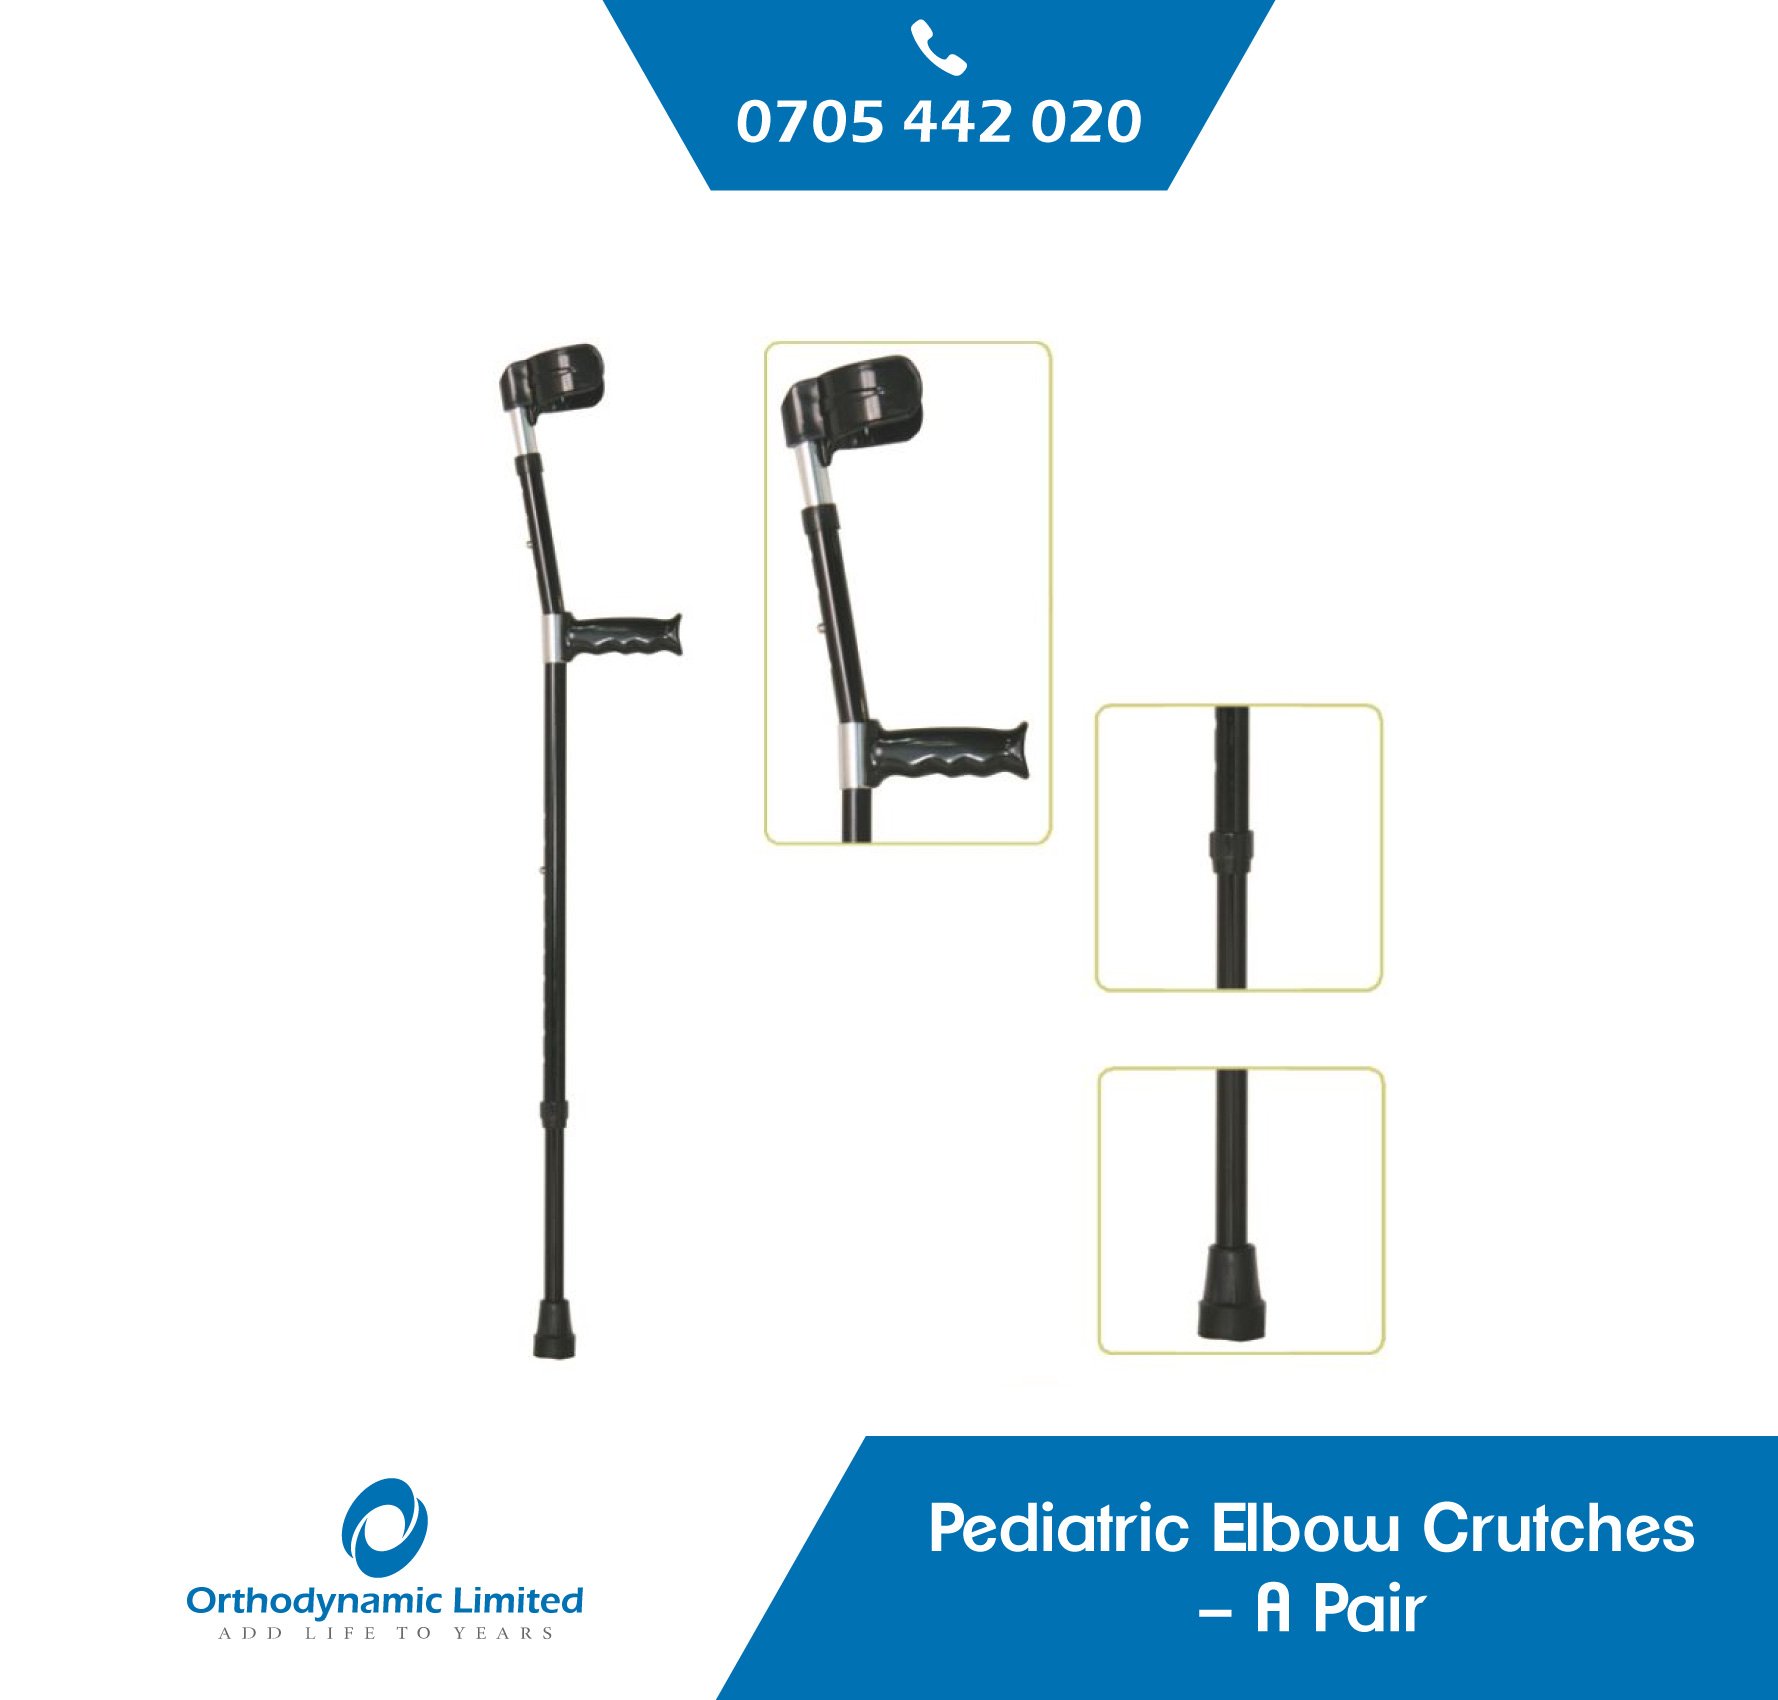 Paediatric Elbow Crutches – A Pair